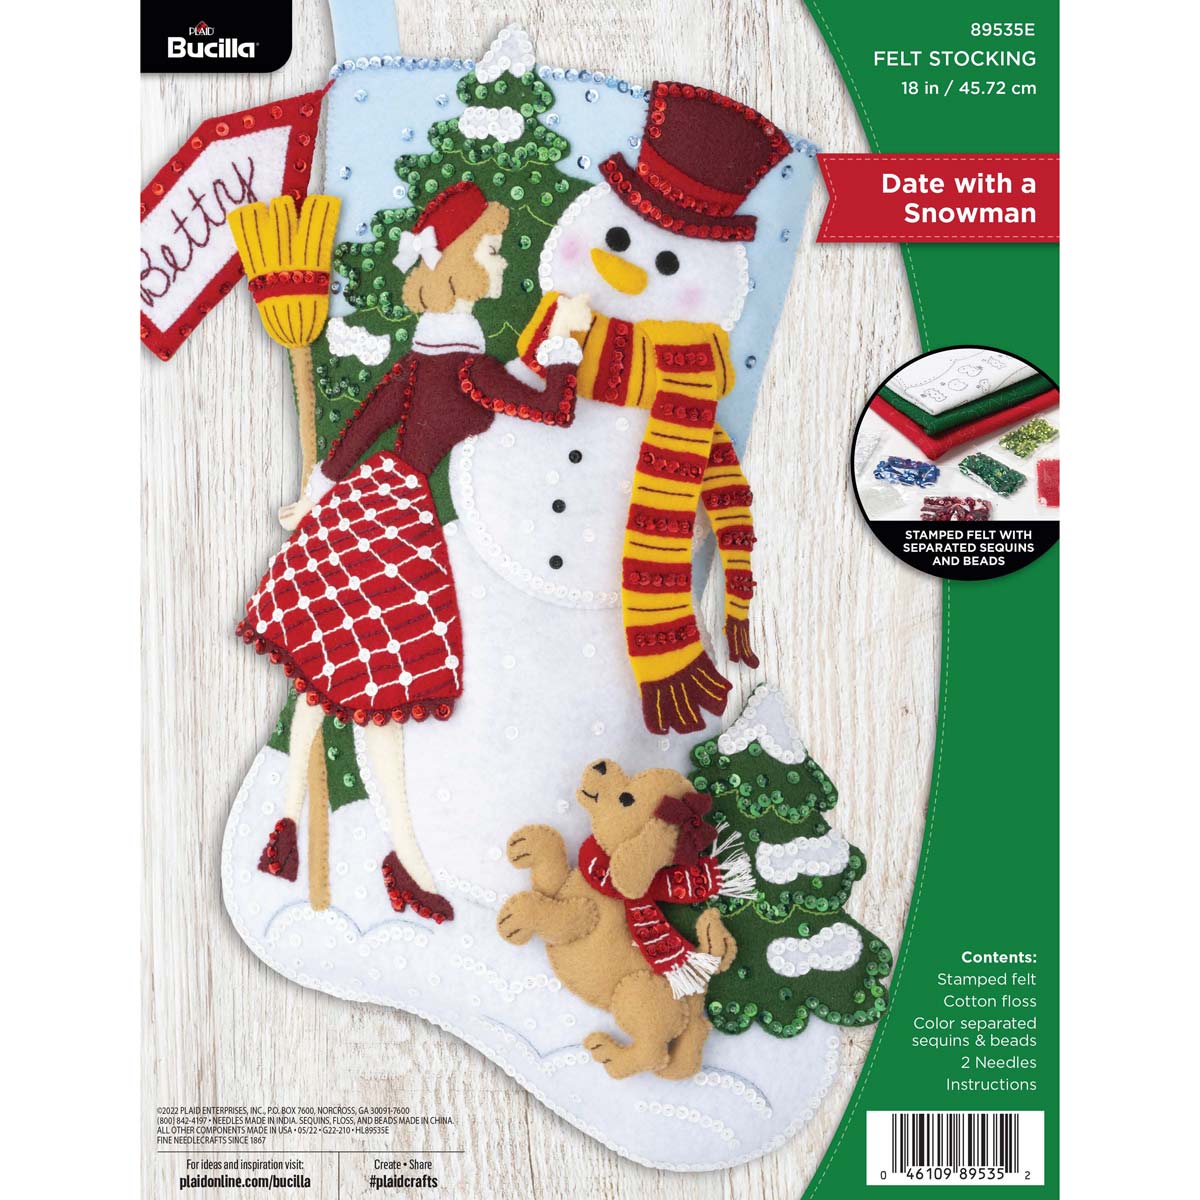 Snowman DIY Kit Needle Felting Kit Snowman Kit Christmas Kit Make